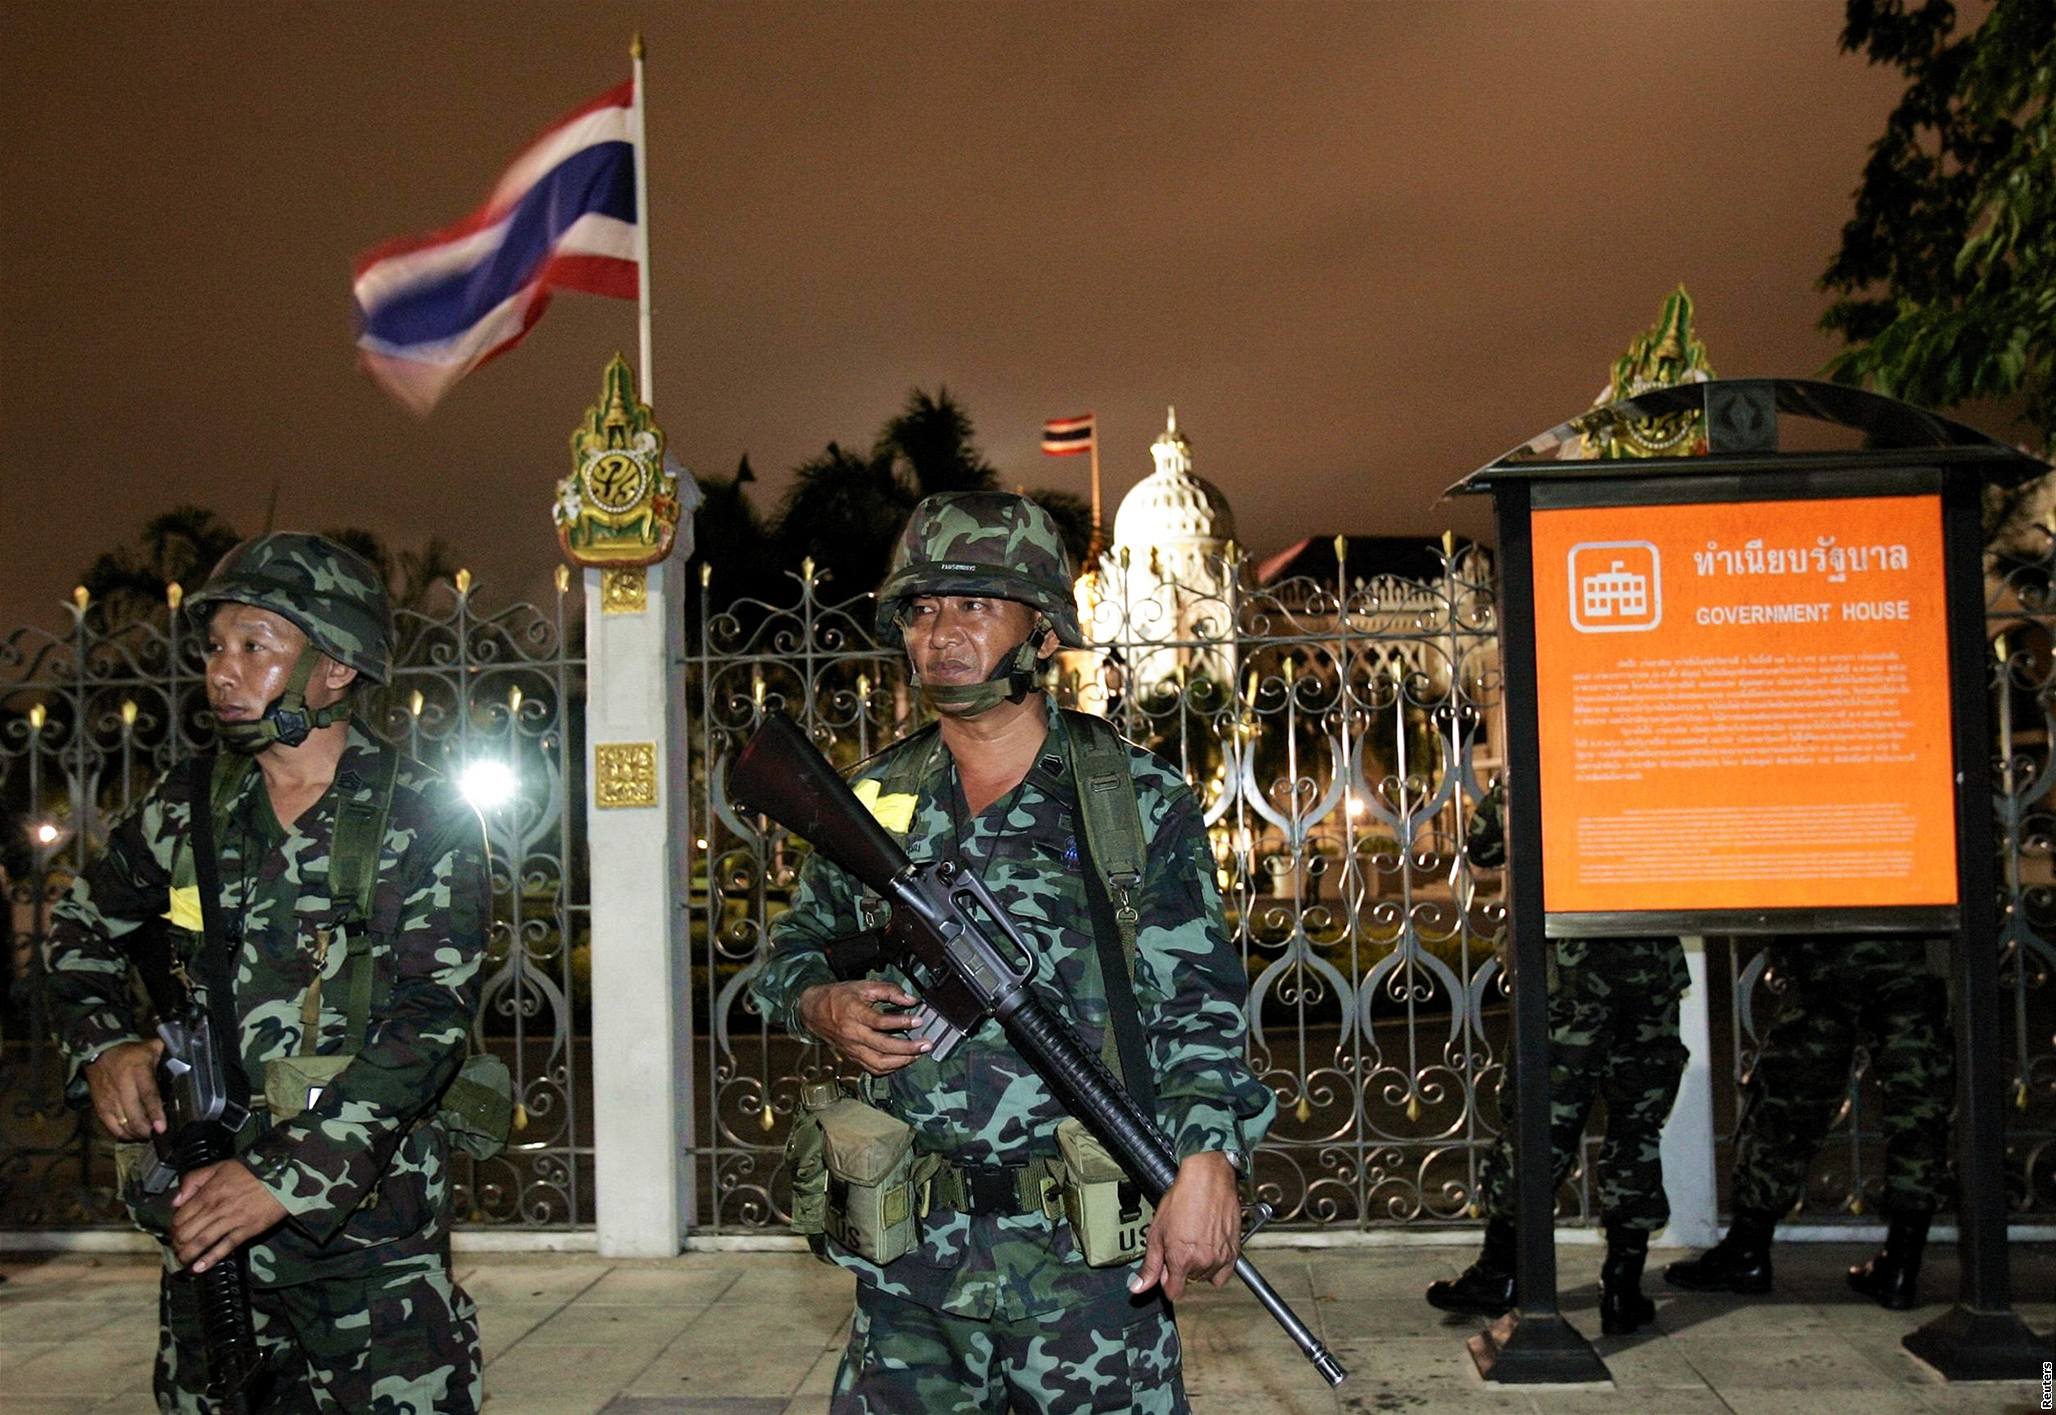 Vojáci obsadili vládní budovy v centru Bangkoku